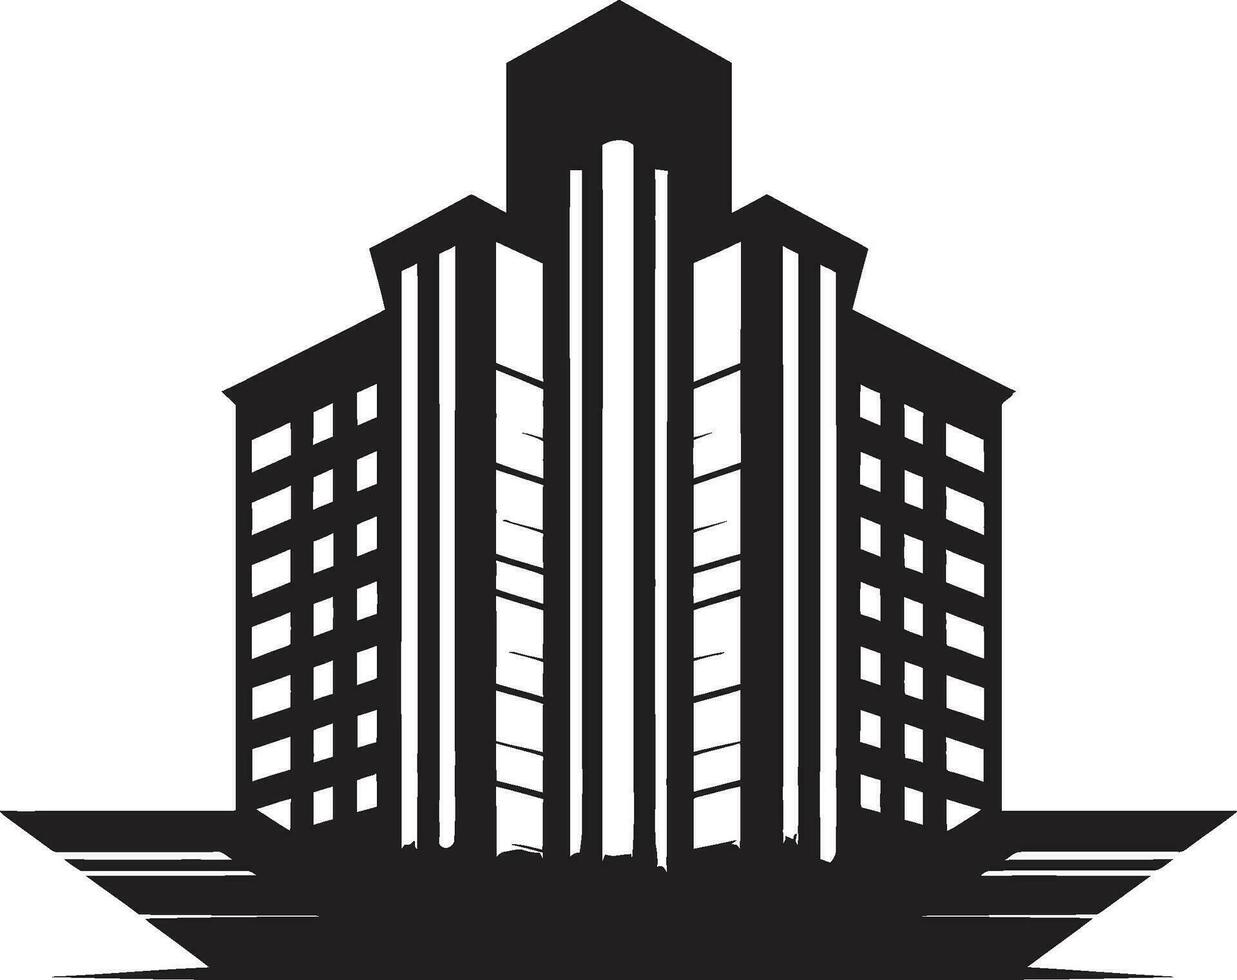 horizonte elevación multifloral urbano vector icono ciudad vista impresiones multiflora edificio en vector emblema